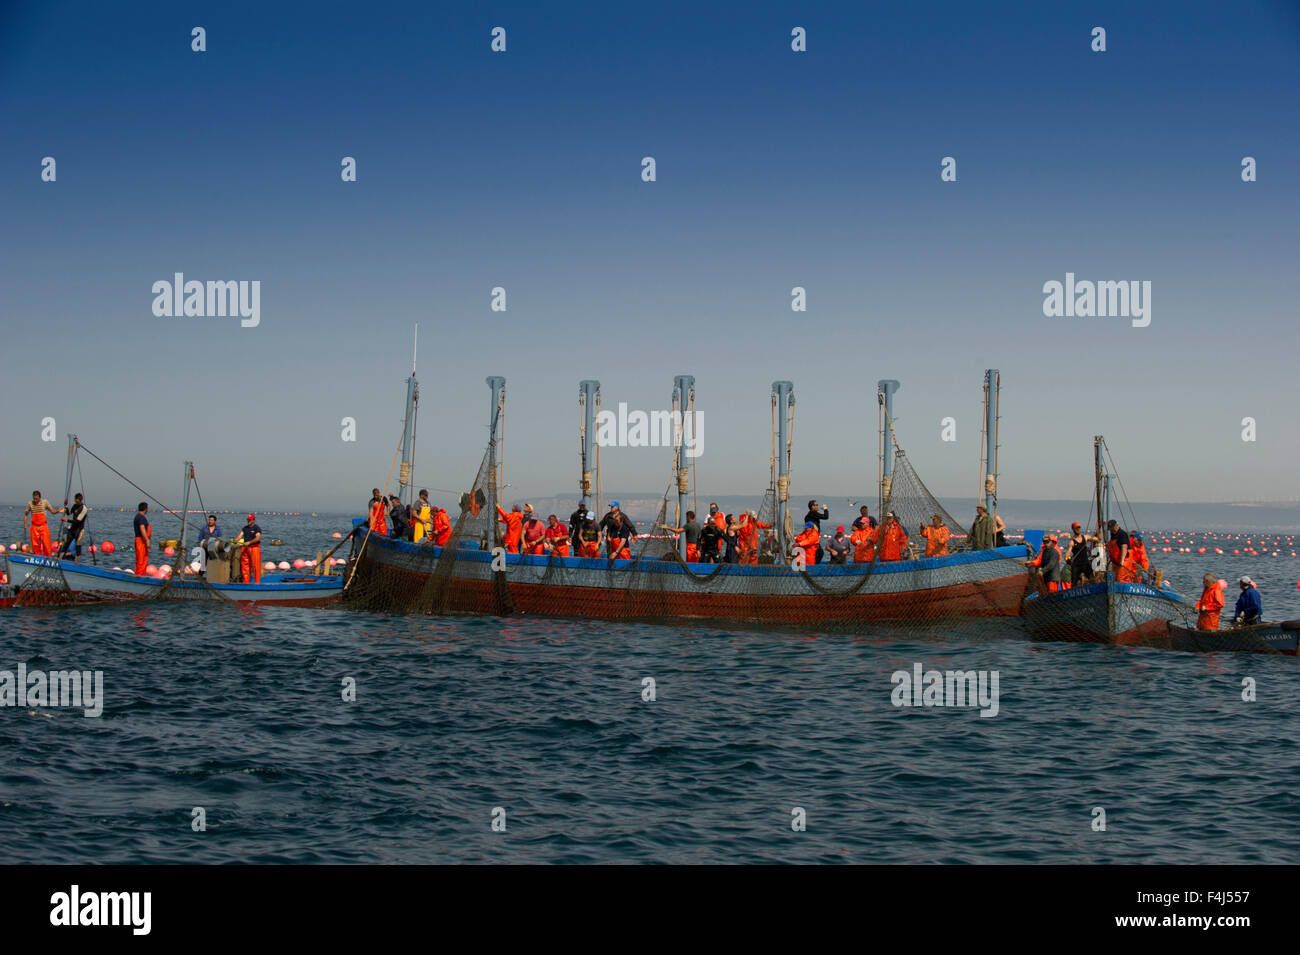 La pêche du thon rouge de l'Almadraba est composé d'un labyrinthe de filets, la finale est nette à la surface à l'aide du treuil, Andalousie, Espagne Banque D'Images